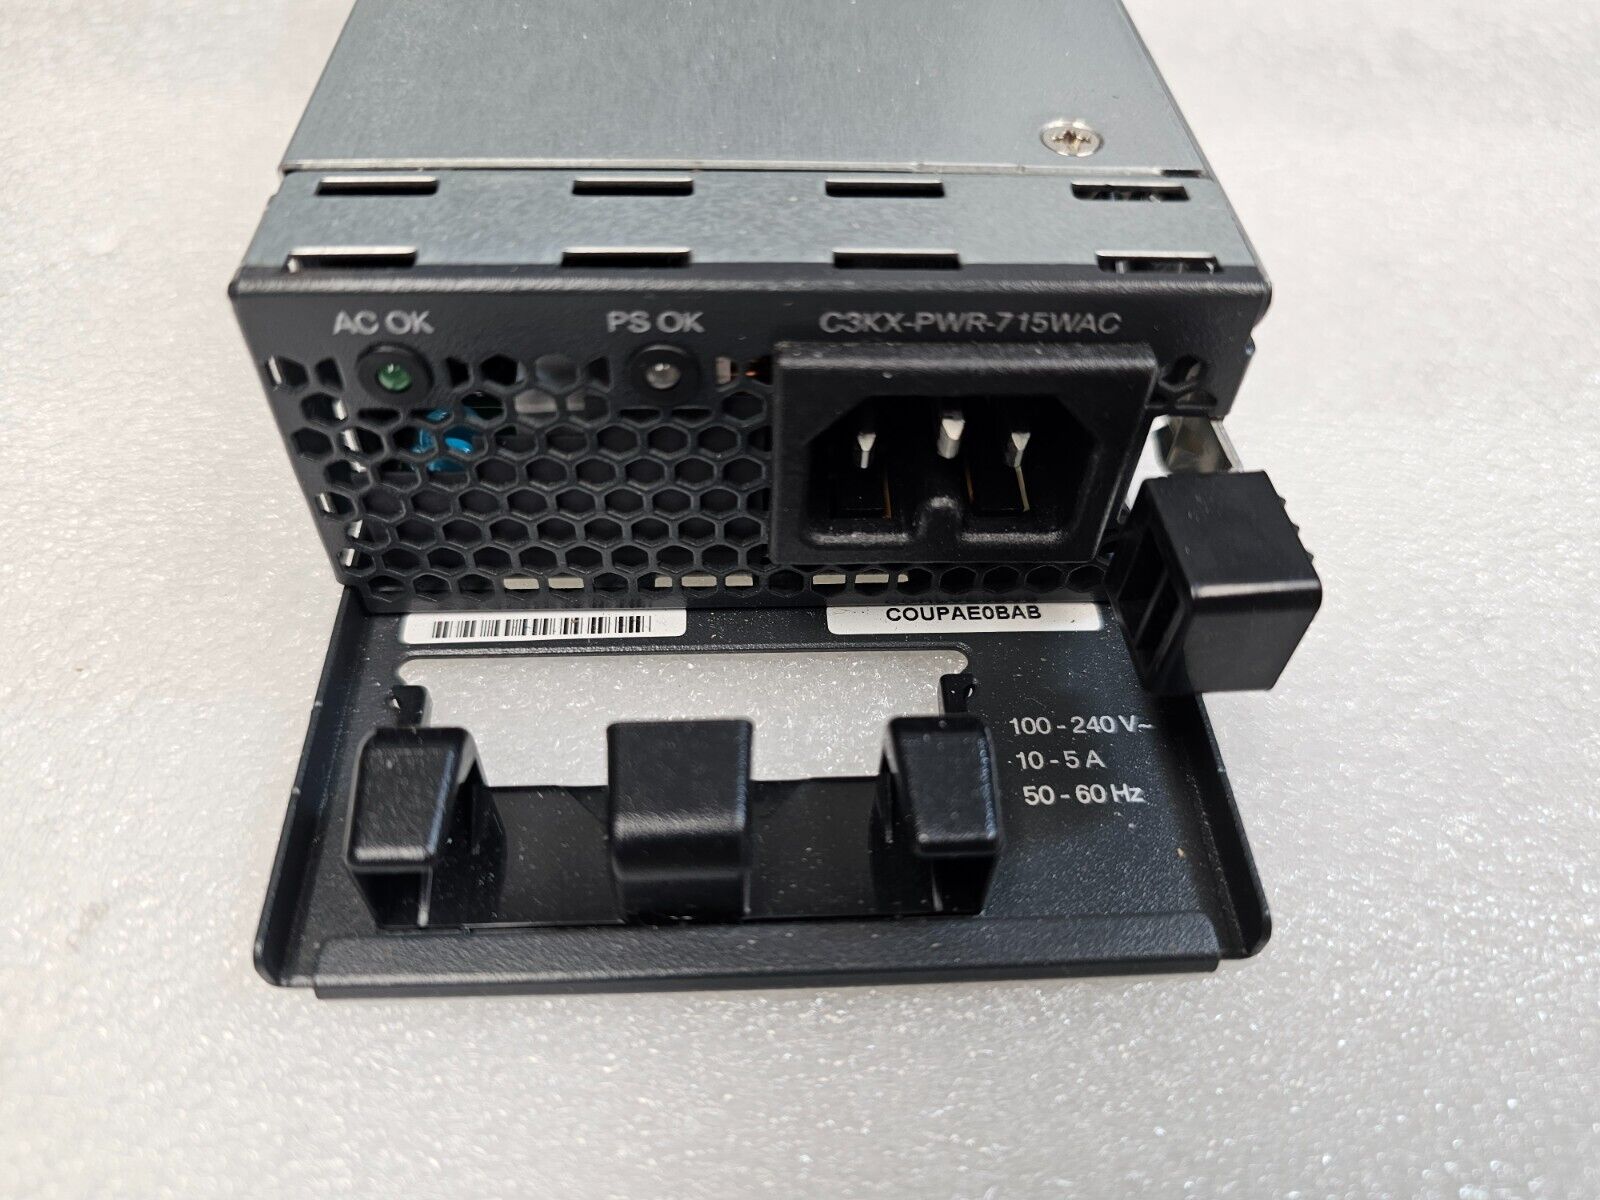 Cisco C3KX-PWR-715WAC 715W AC Power Supply for 3750X, 3560X PoE+ Switch